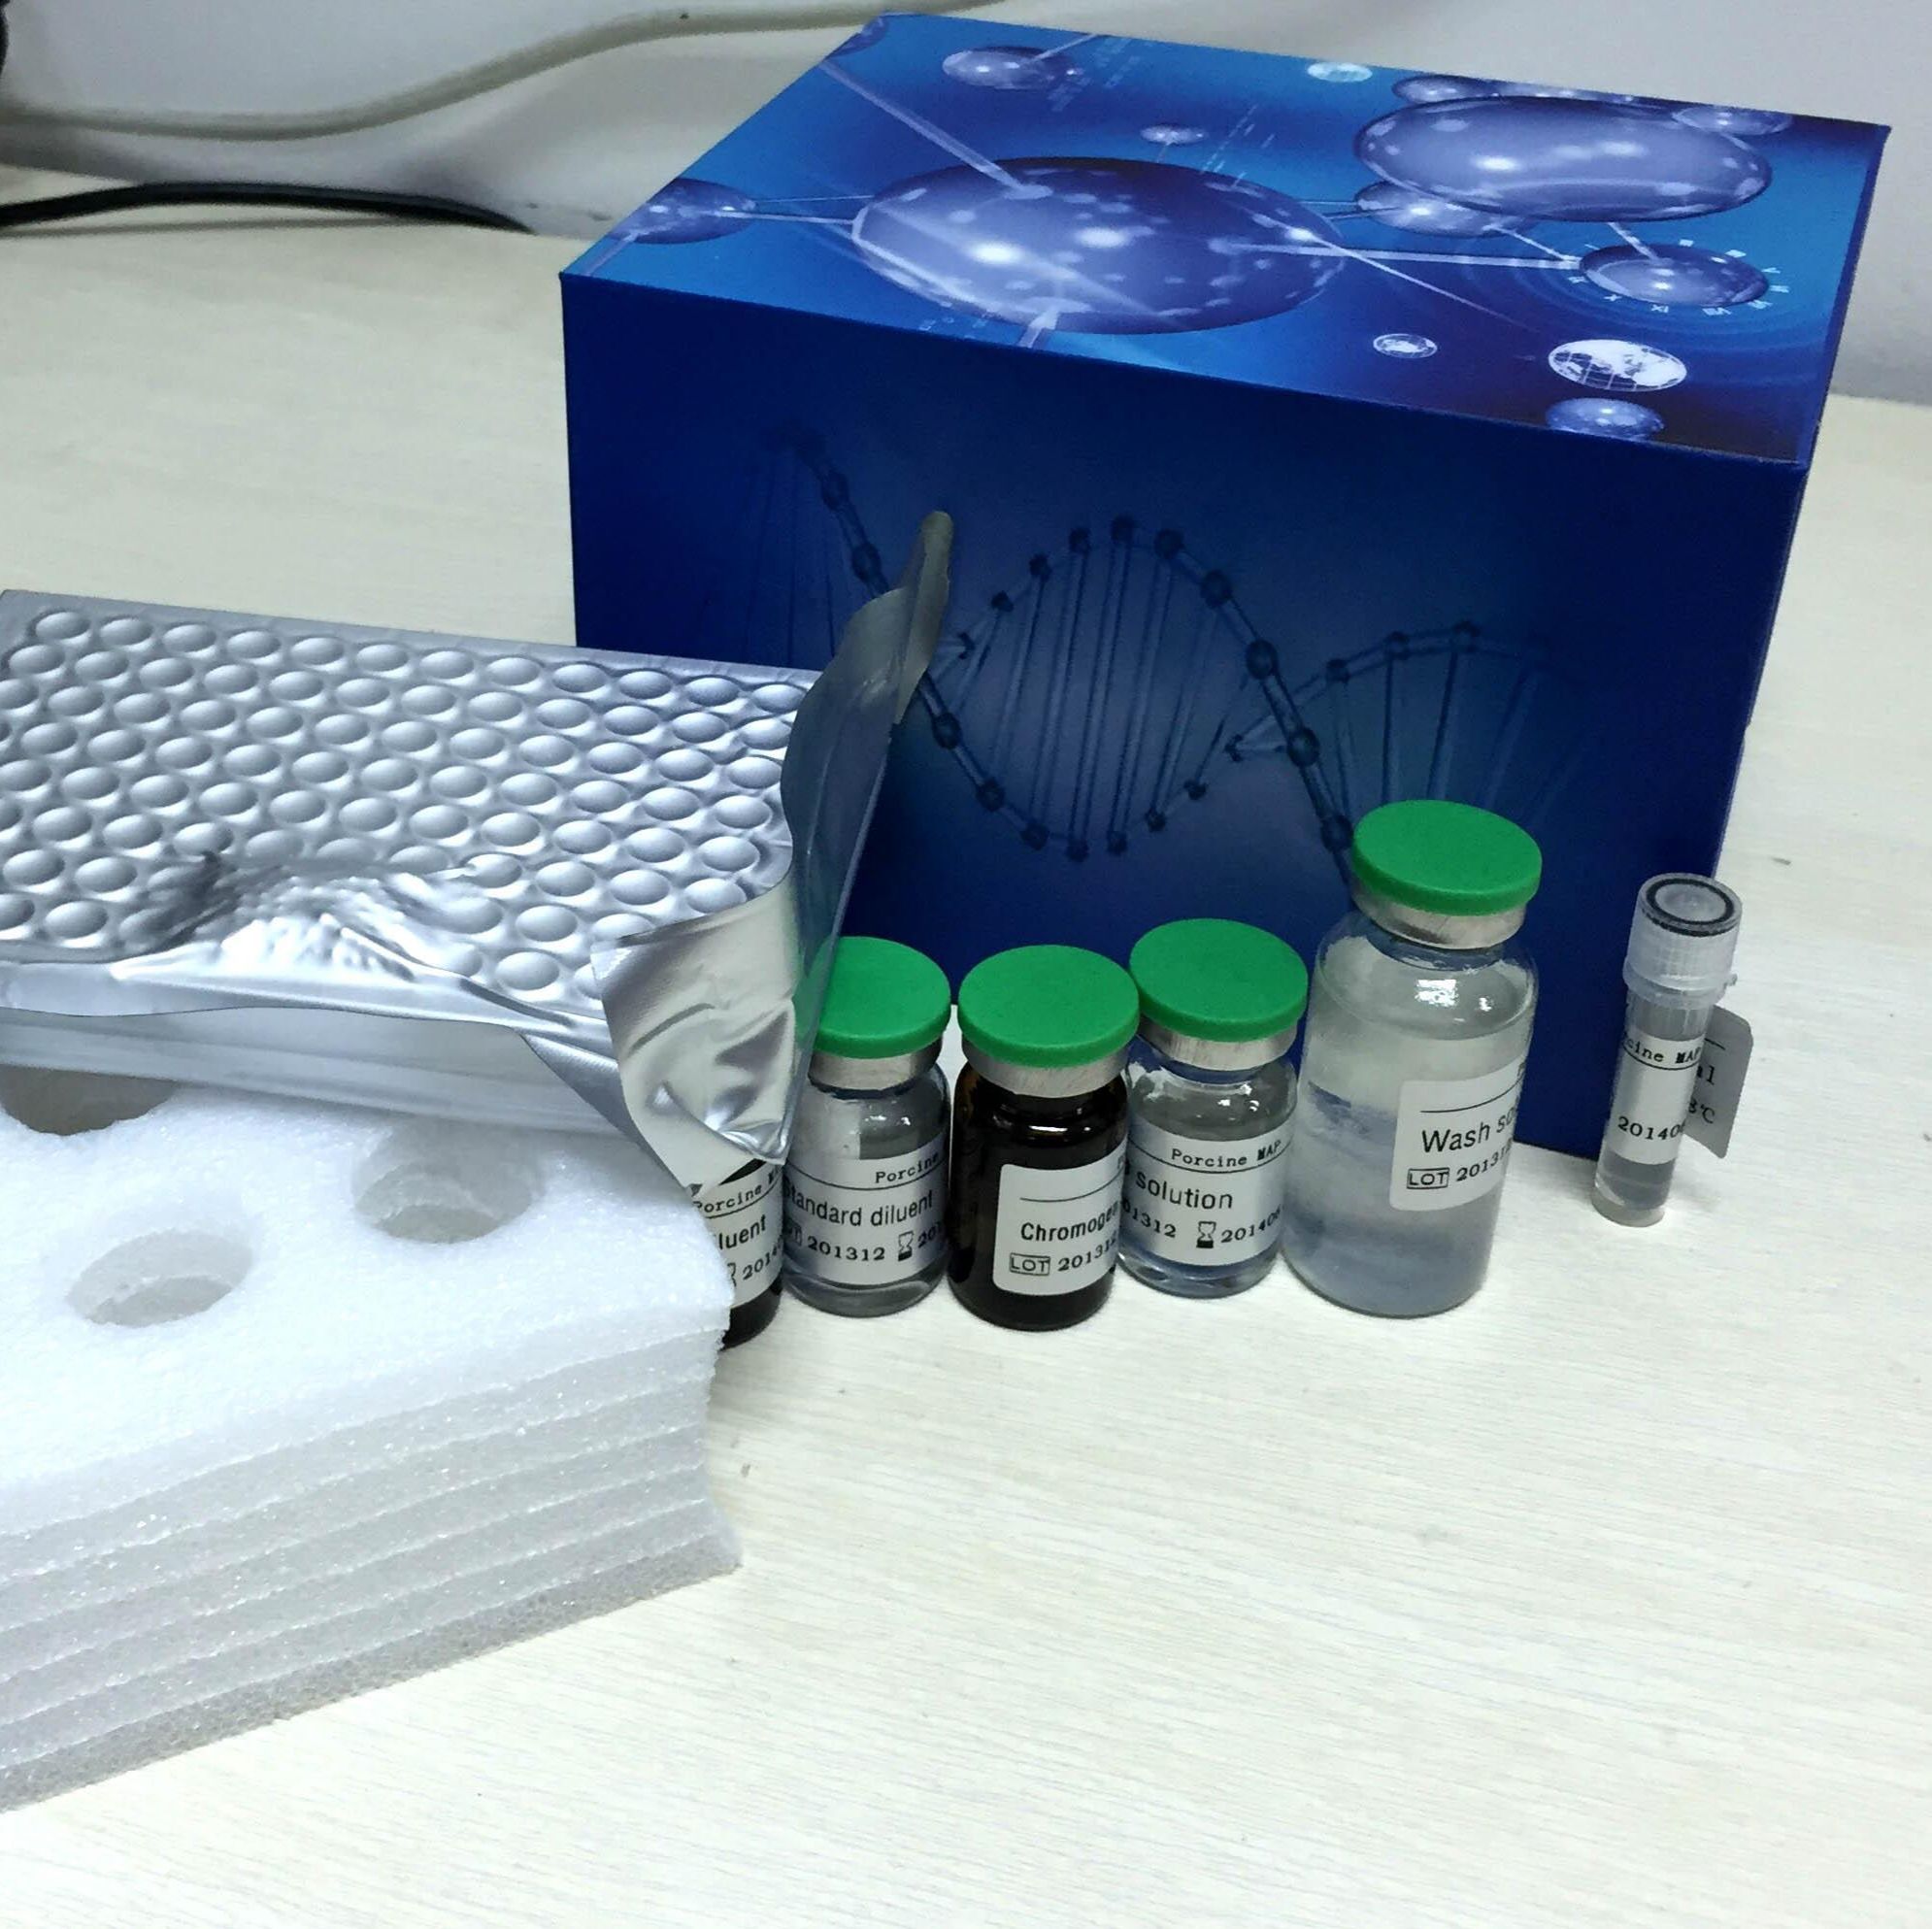 Annexin V-FITC/ 7-AAD荧光双染细胞凋亡检测试剂盒